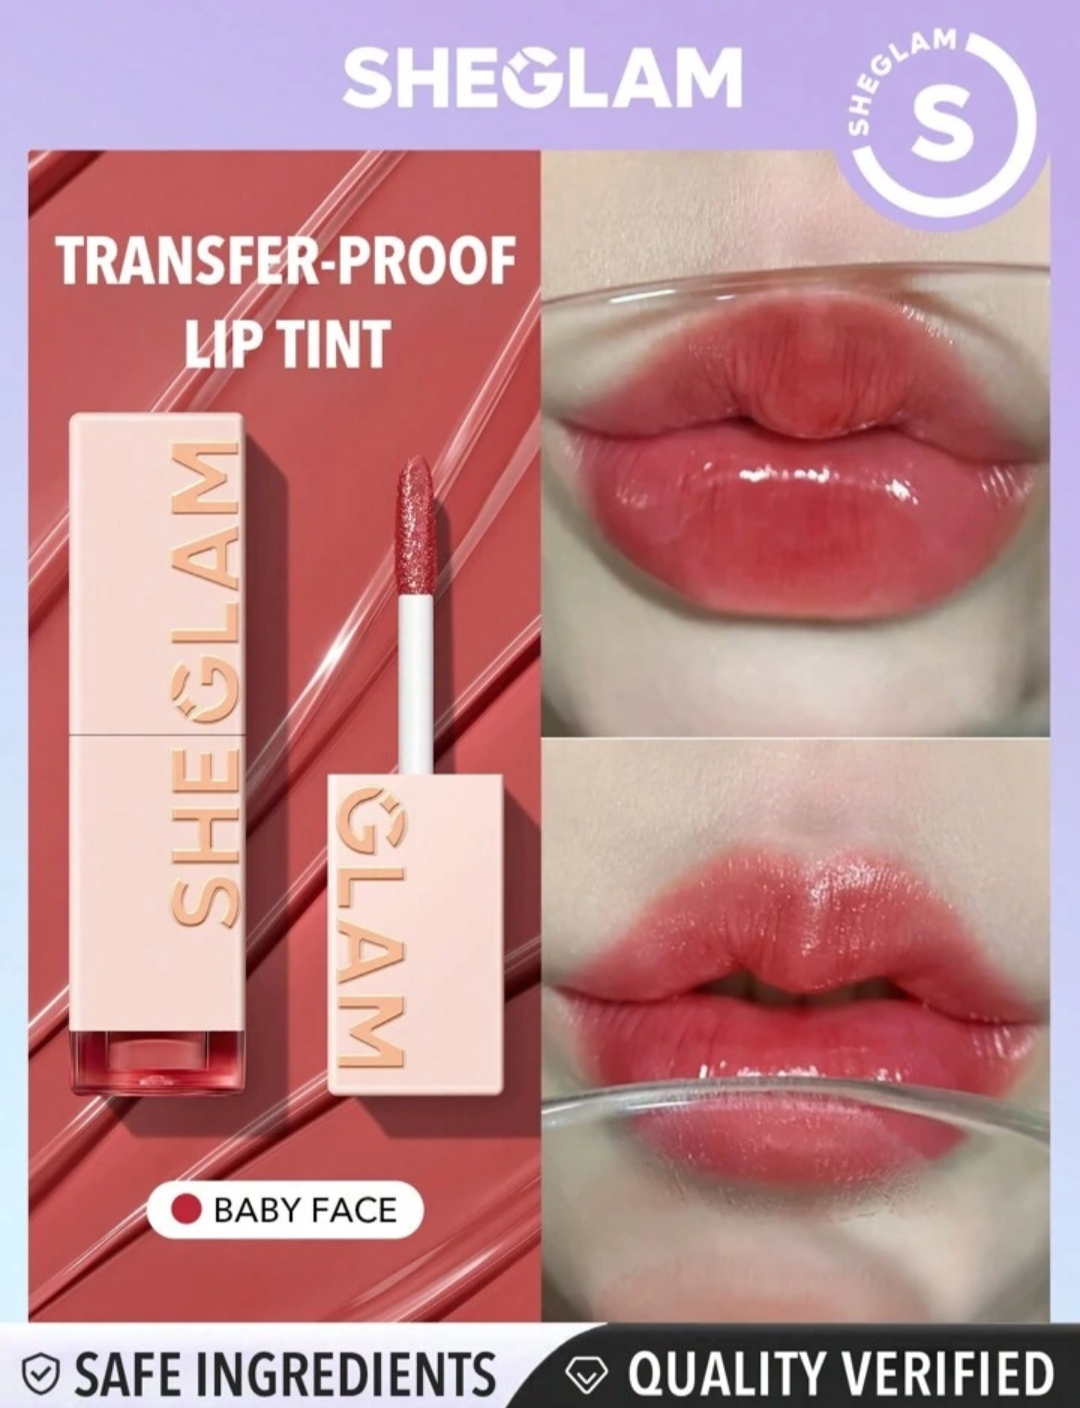 تینت لب شیگلم مدل  TAKE A HINT lip tint در دو رنگ birthday lips and level up